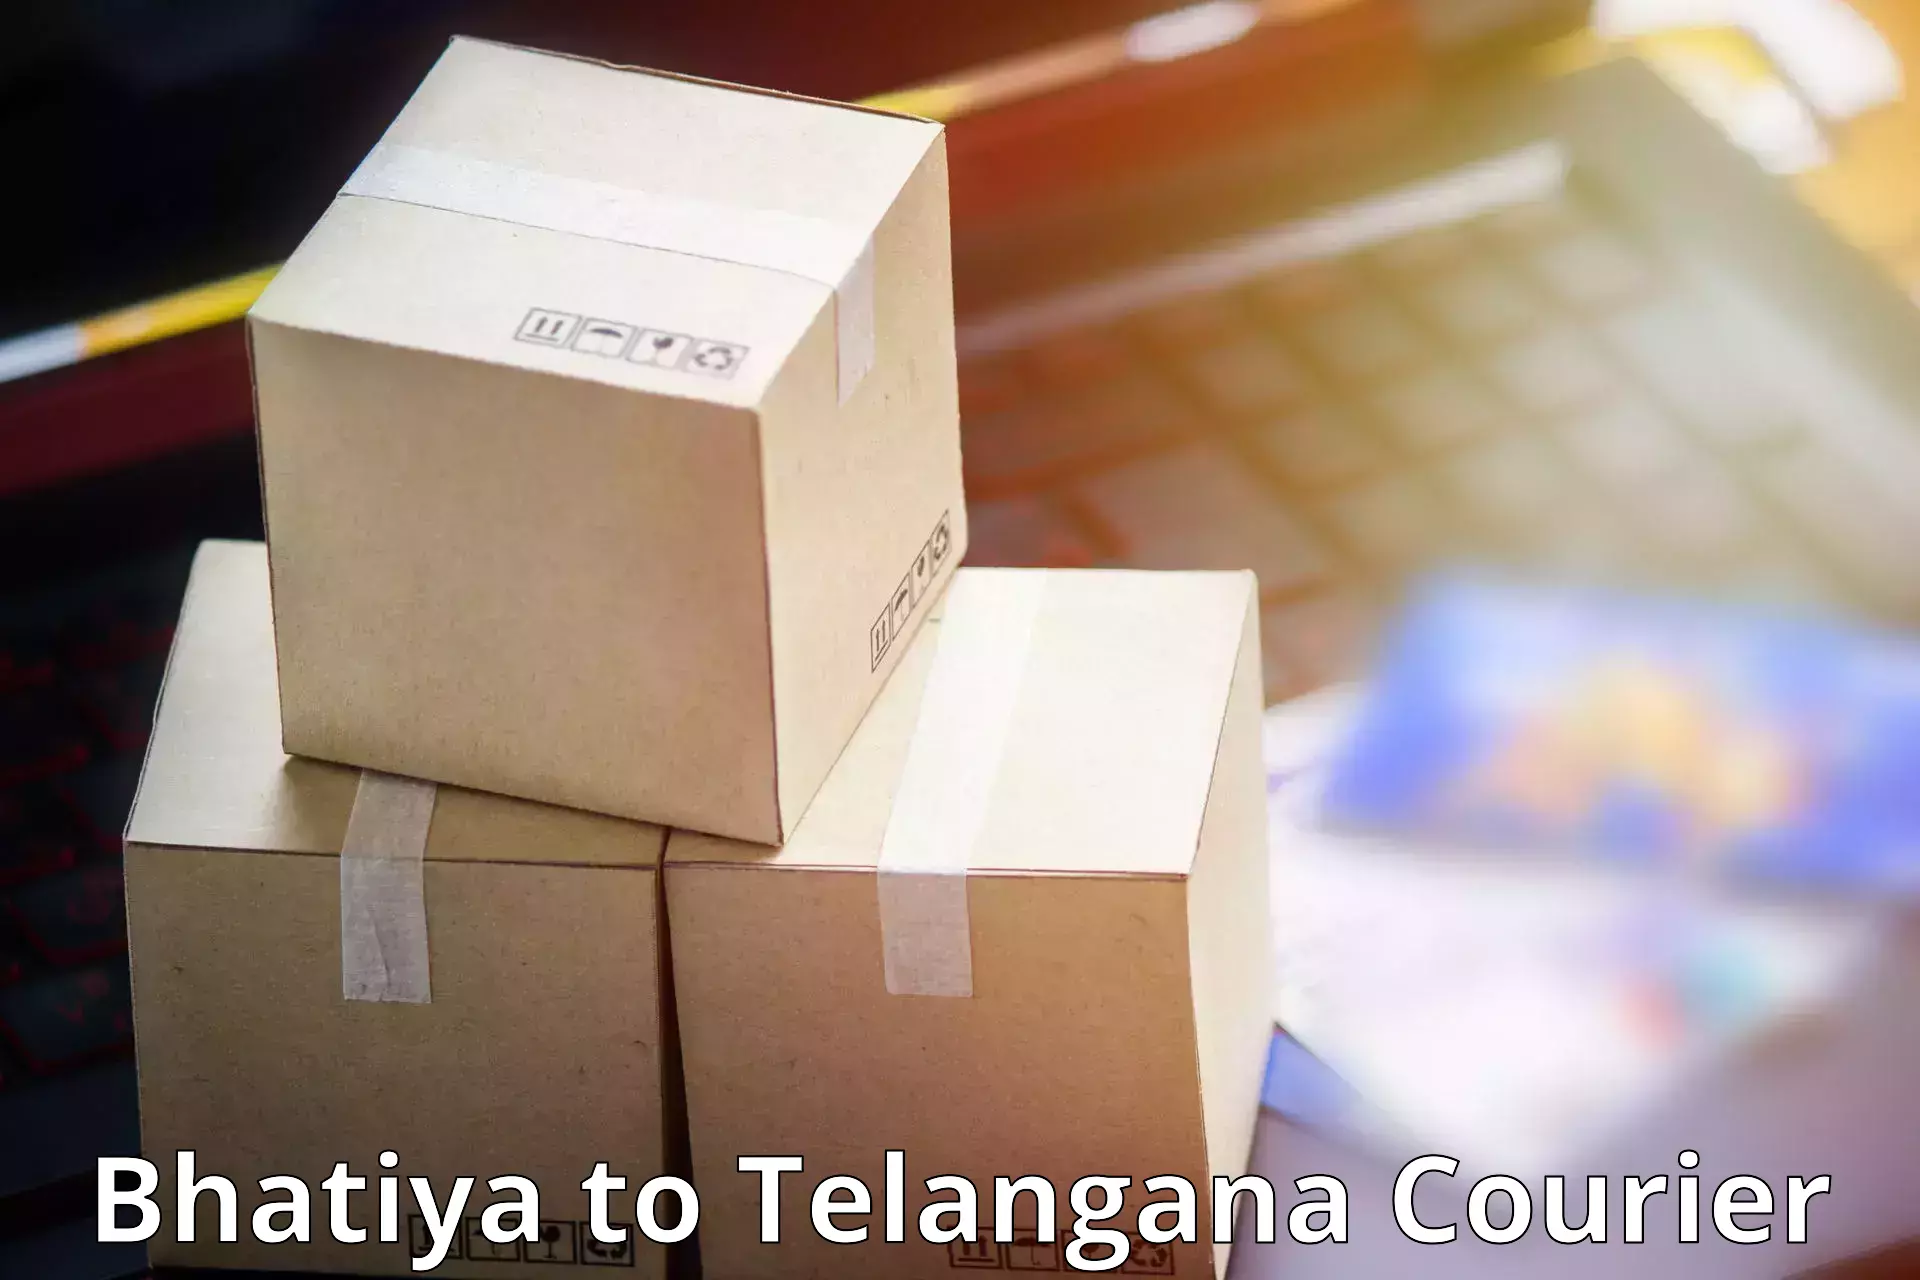 Business delivery service Bhatiya to Kothagudem